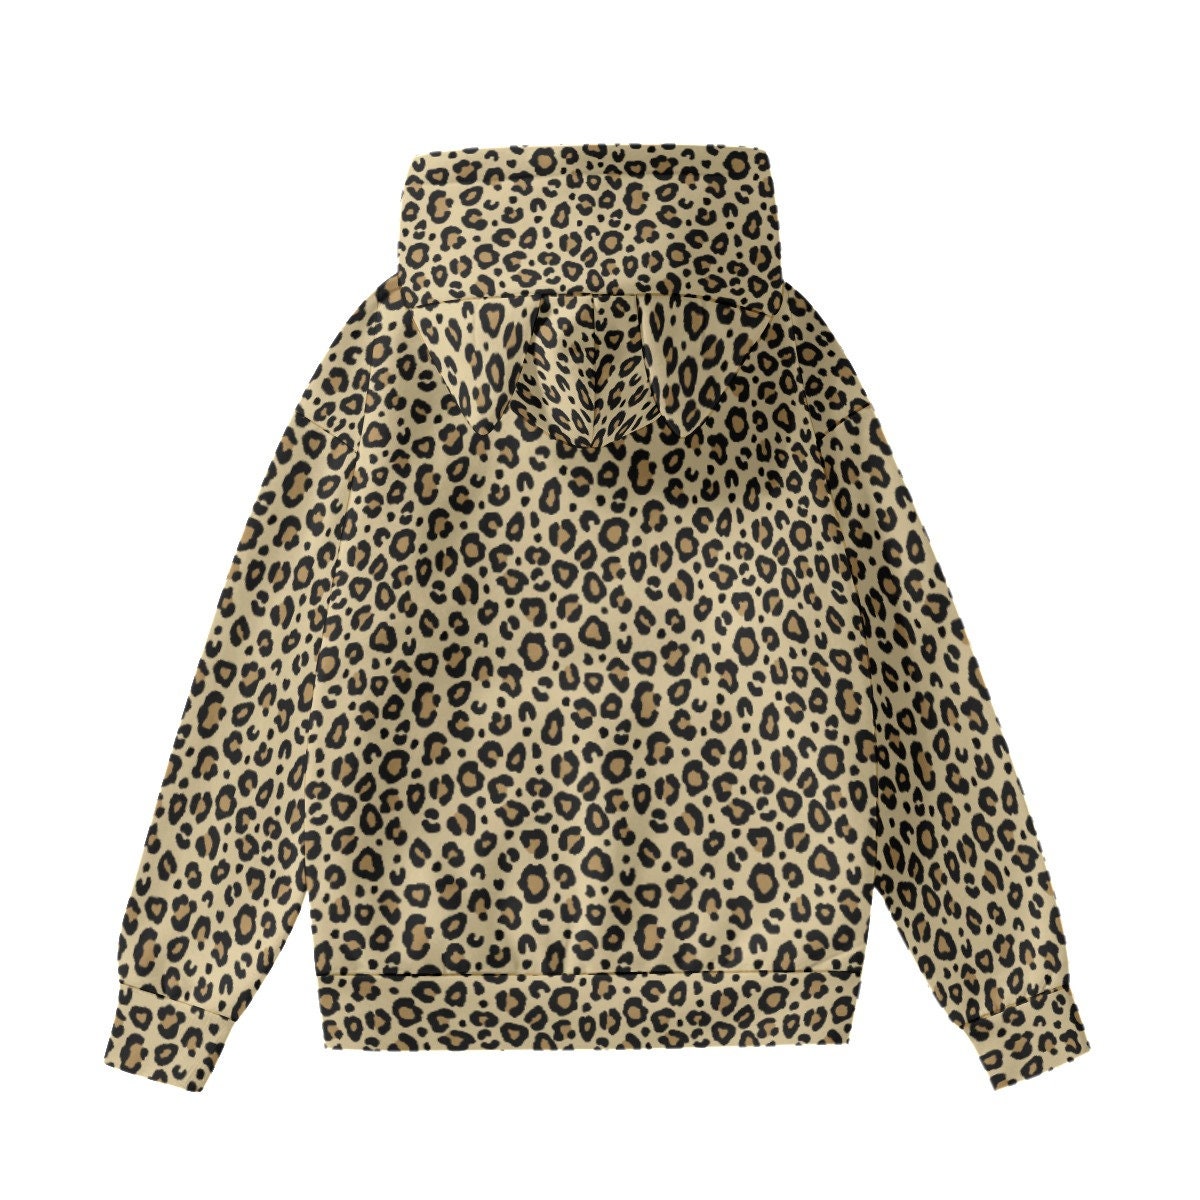 Leopard Print Hoodie, Womens Hoodies, Cat ear hoodie, Leopard Print Sweater, Women's Sweater, Animal Print Hoodie, Women's hoodie